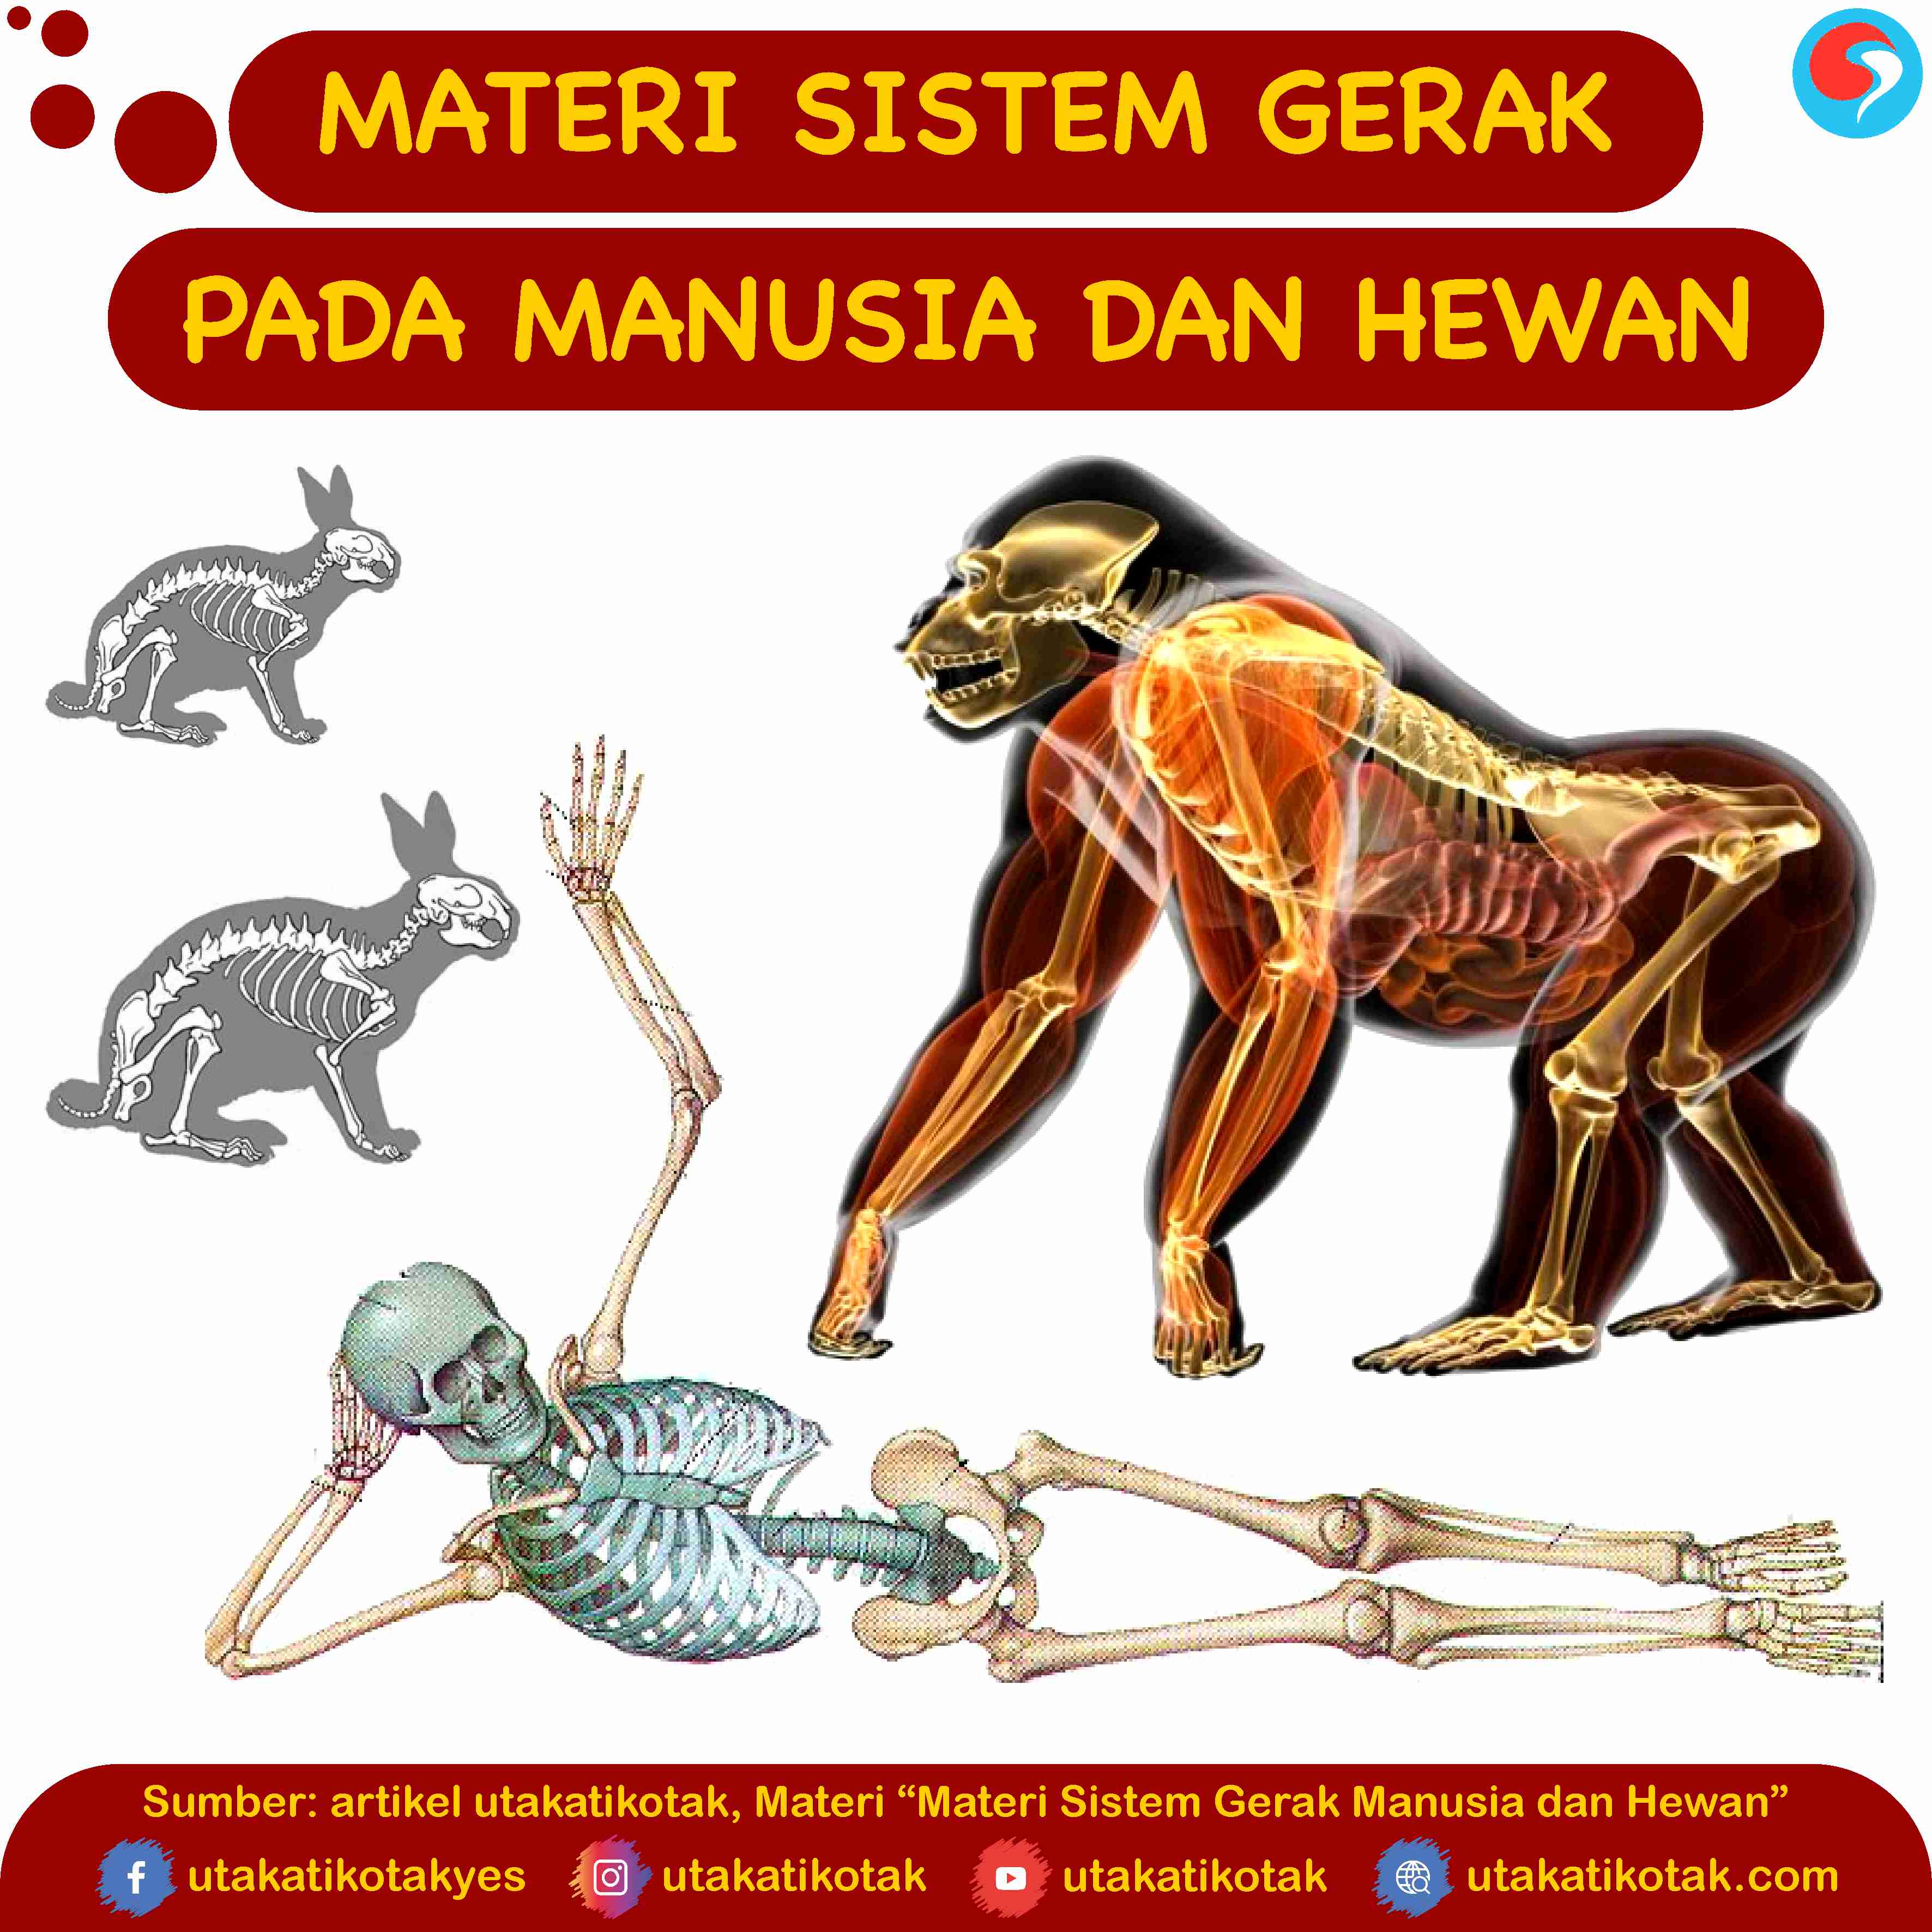 Materi Sistem Gerak Manusia dan Hewan